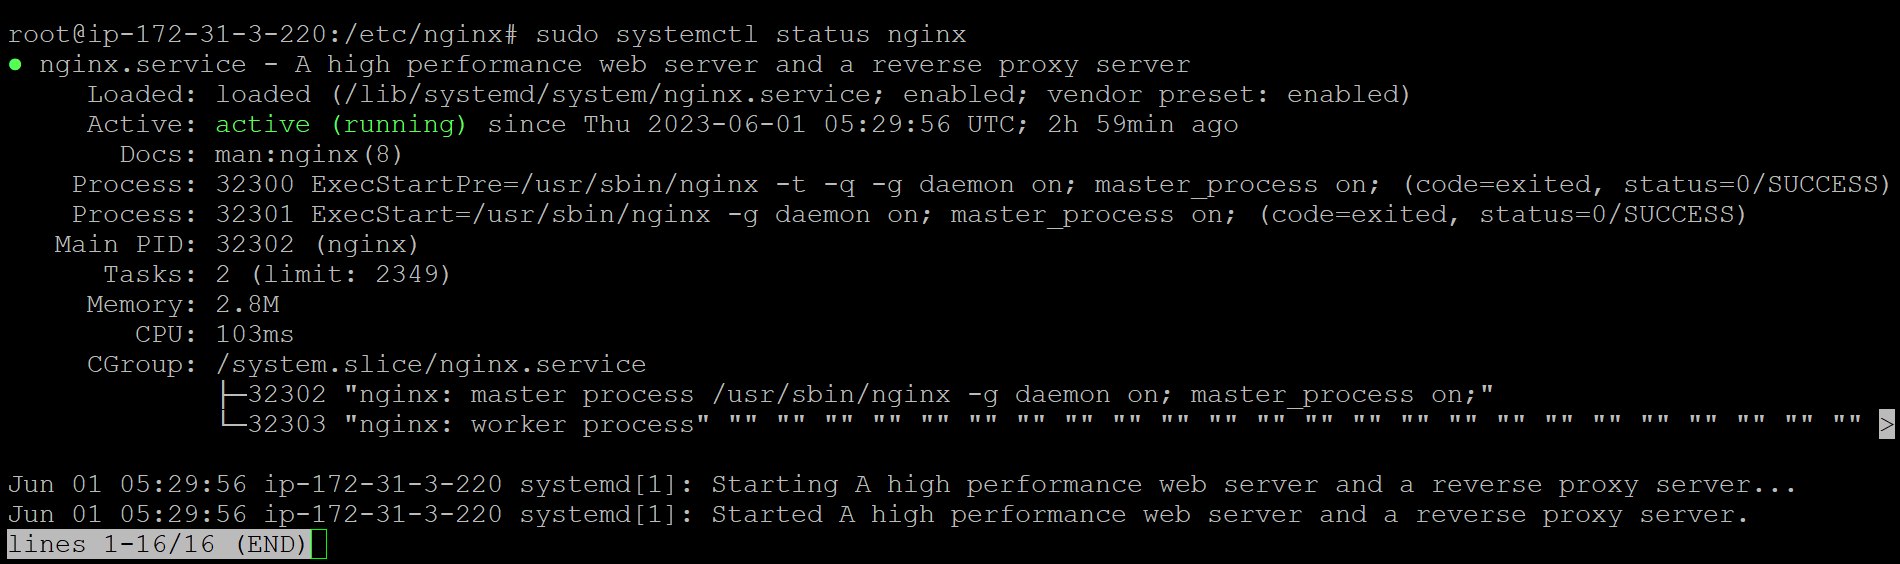 How to Install Nginx on Ubuntu